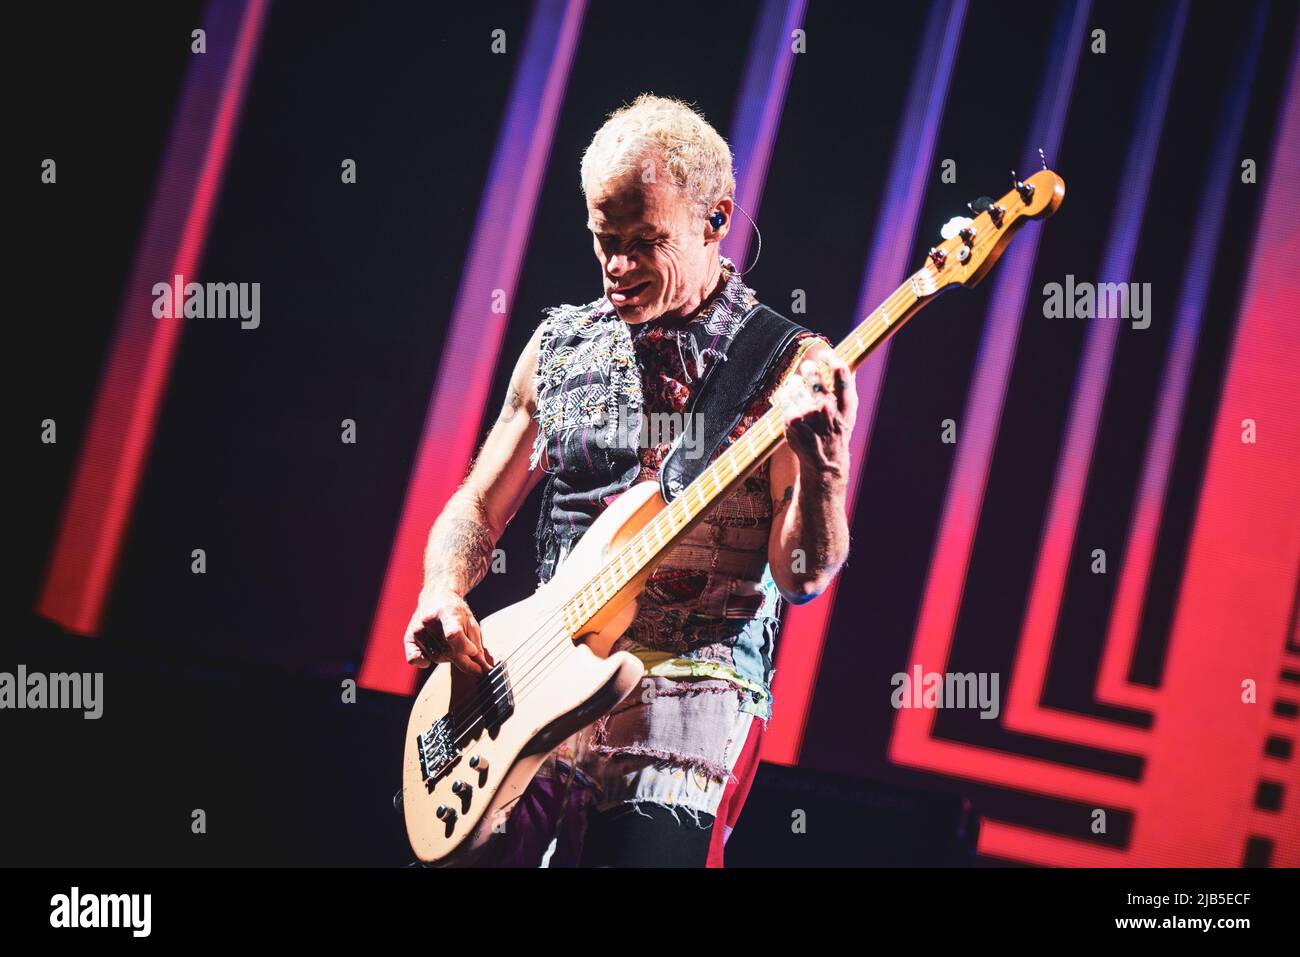 ZURICH, HALLENSTADION, OCTUBRE DE 5th 2016: Flea, bajista de la banda americana de rock funk Red Hot Chili Peppers, tocando en directo en el escenario para la parte suiza de la “Getaway World Tour” Foto de stock